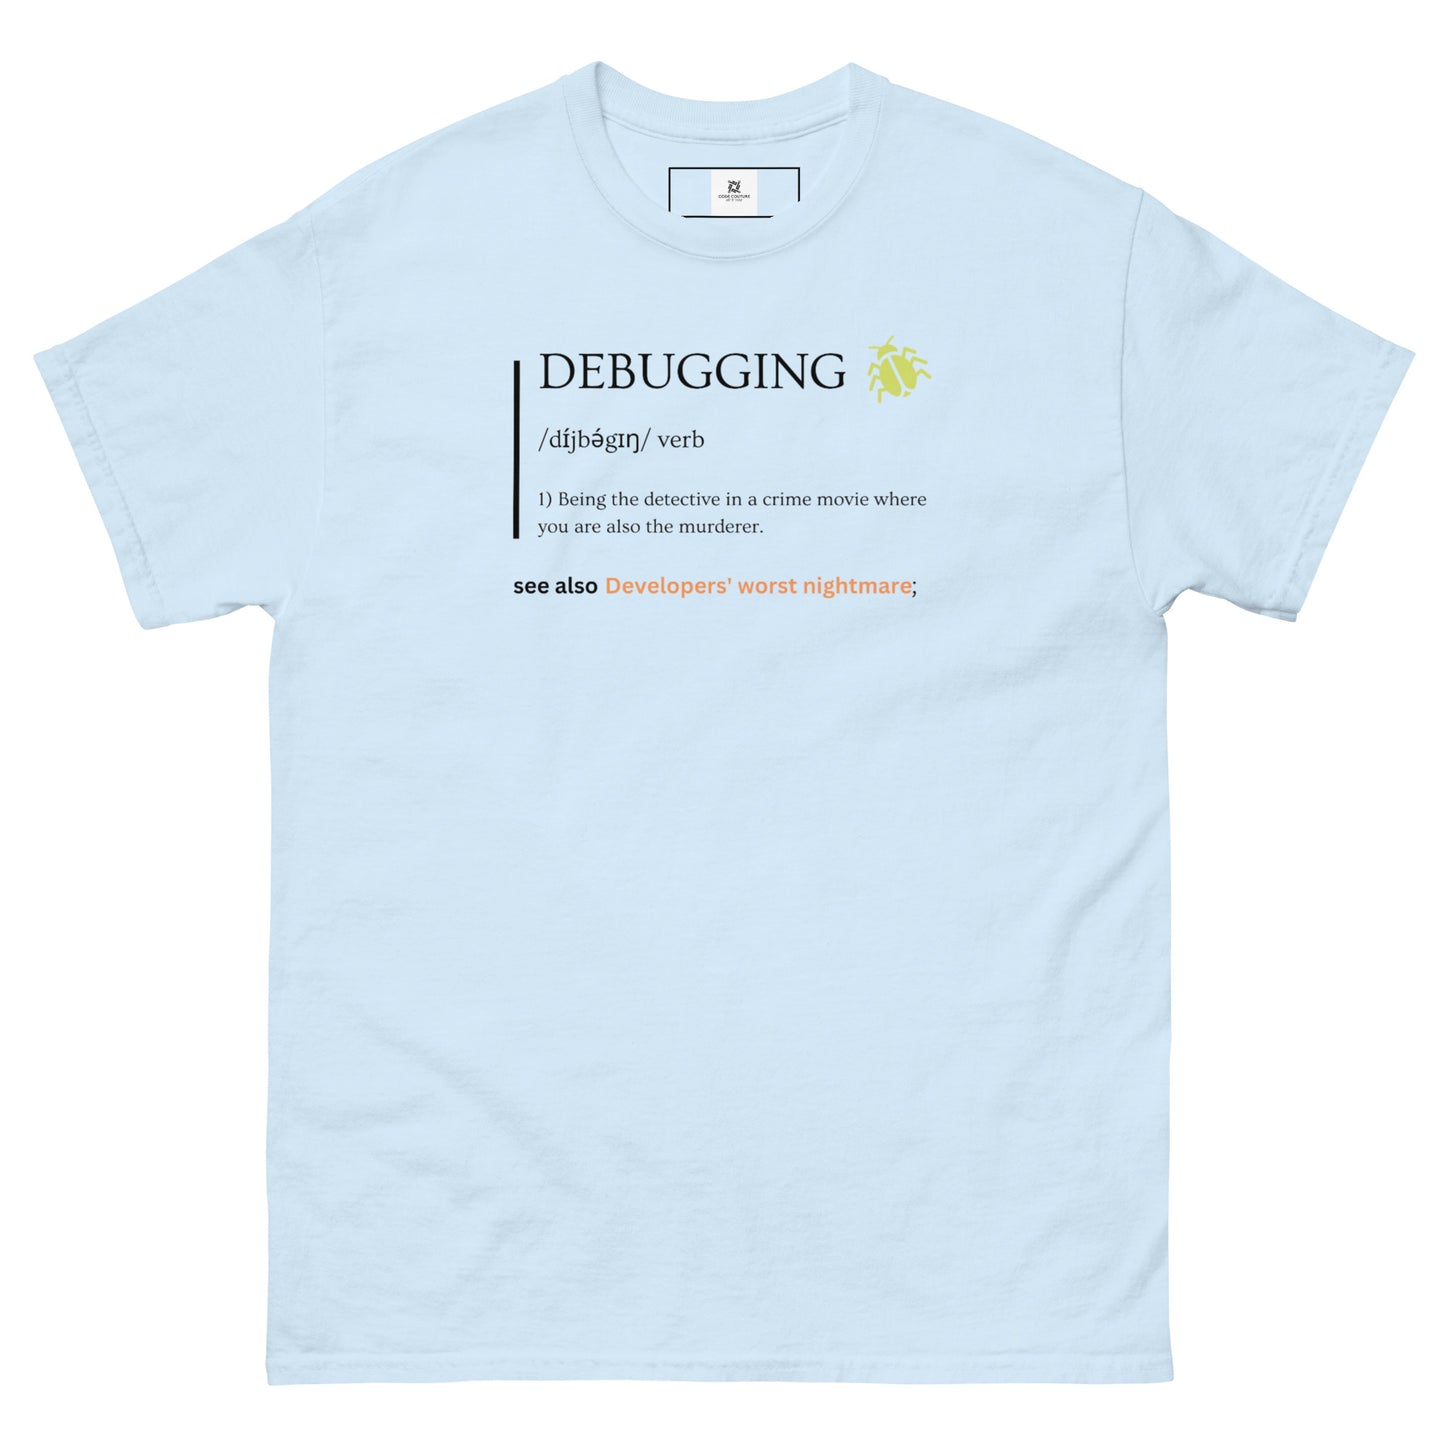 Debugging Definition Tee